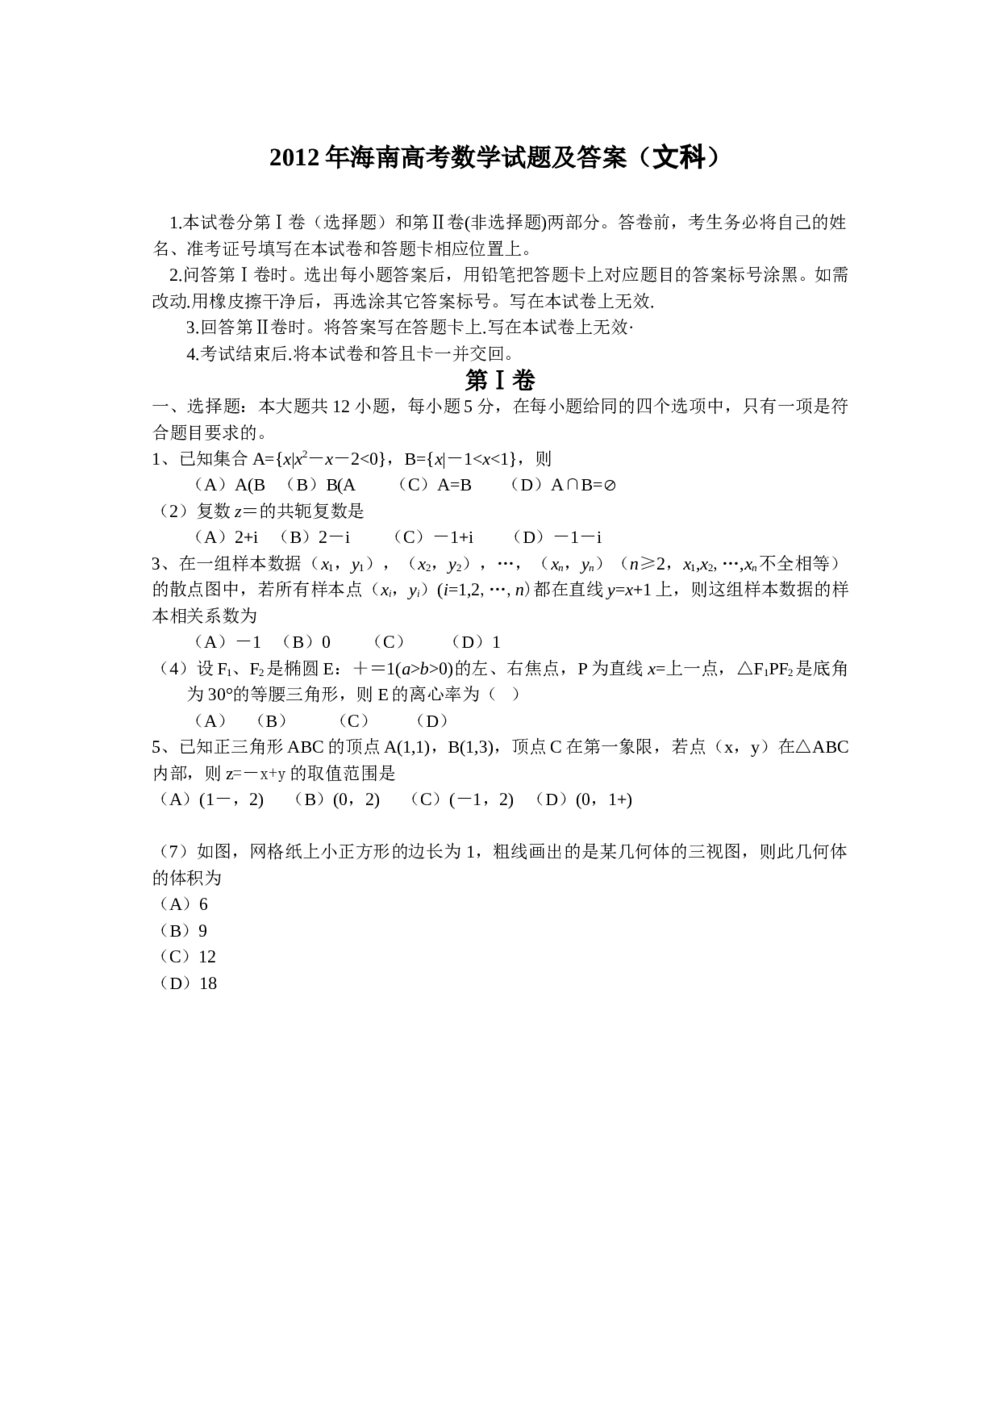 2012年海南省高考(文科)数学试题试卷+答案